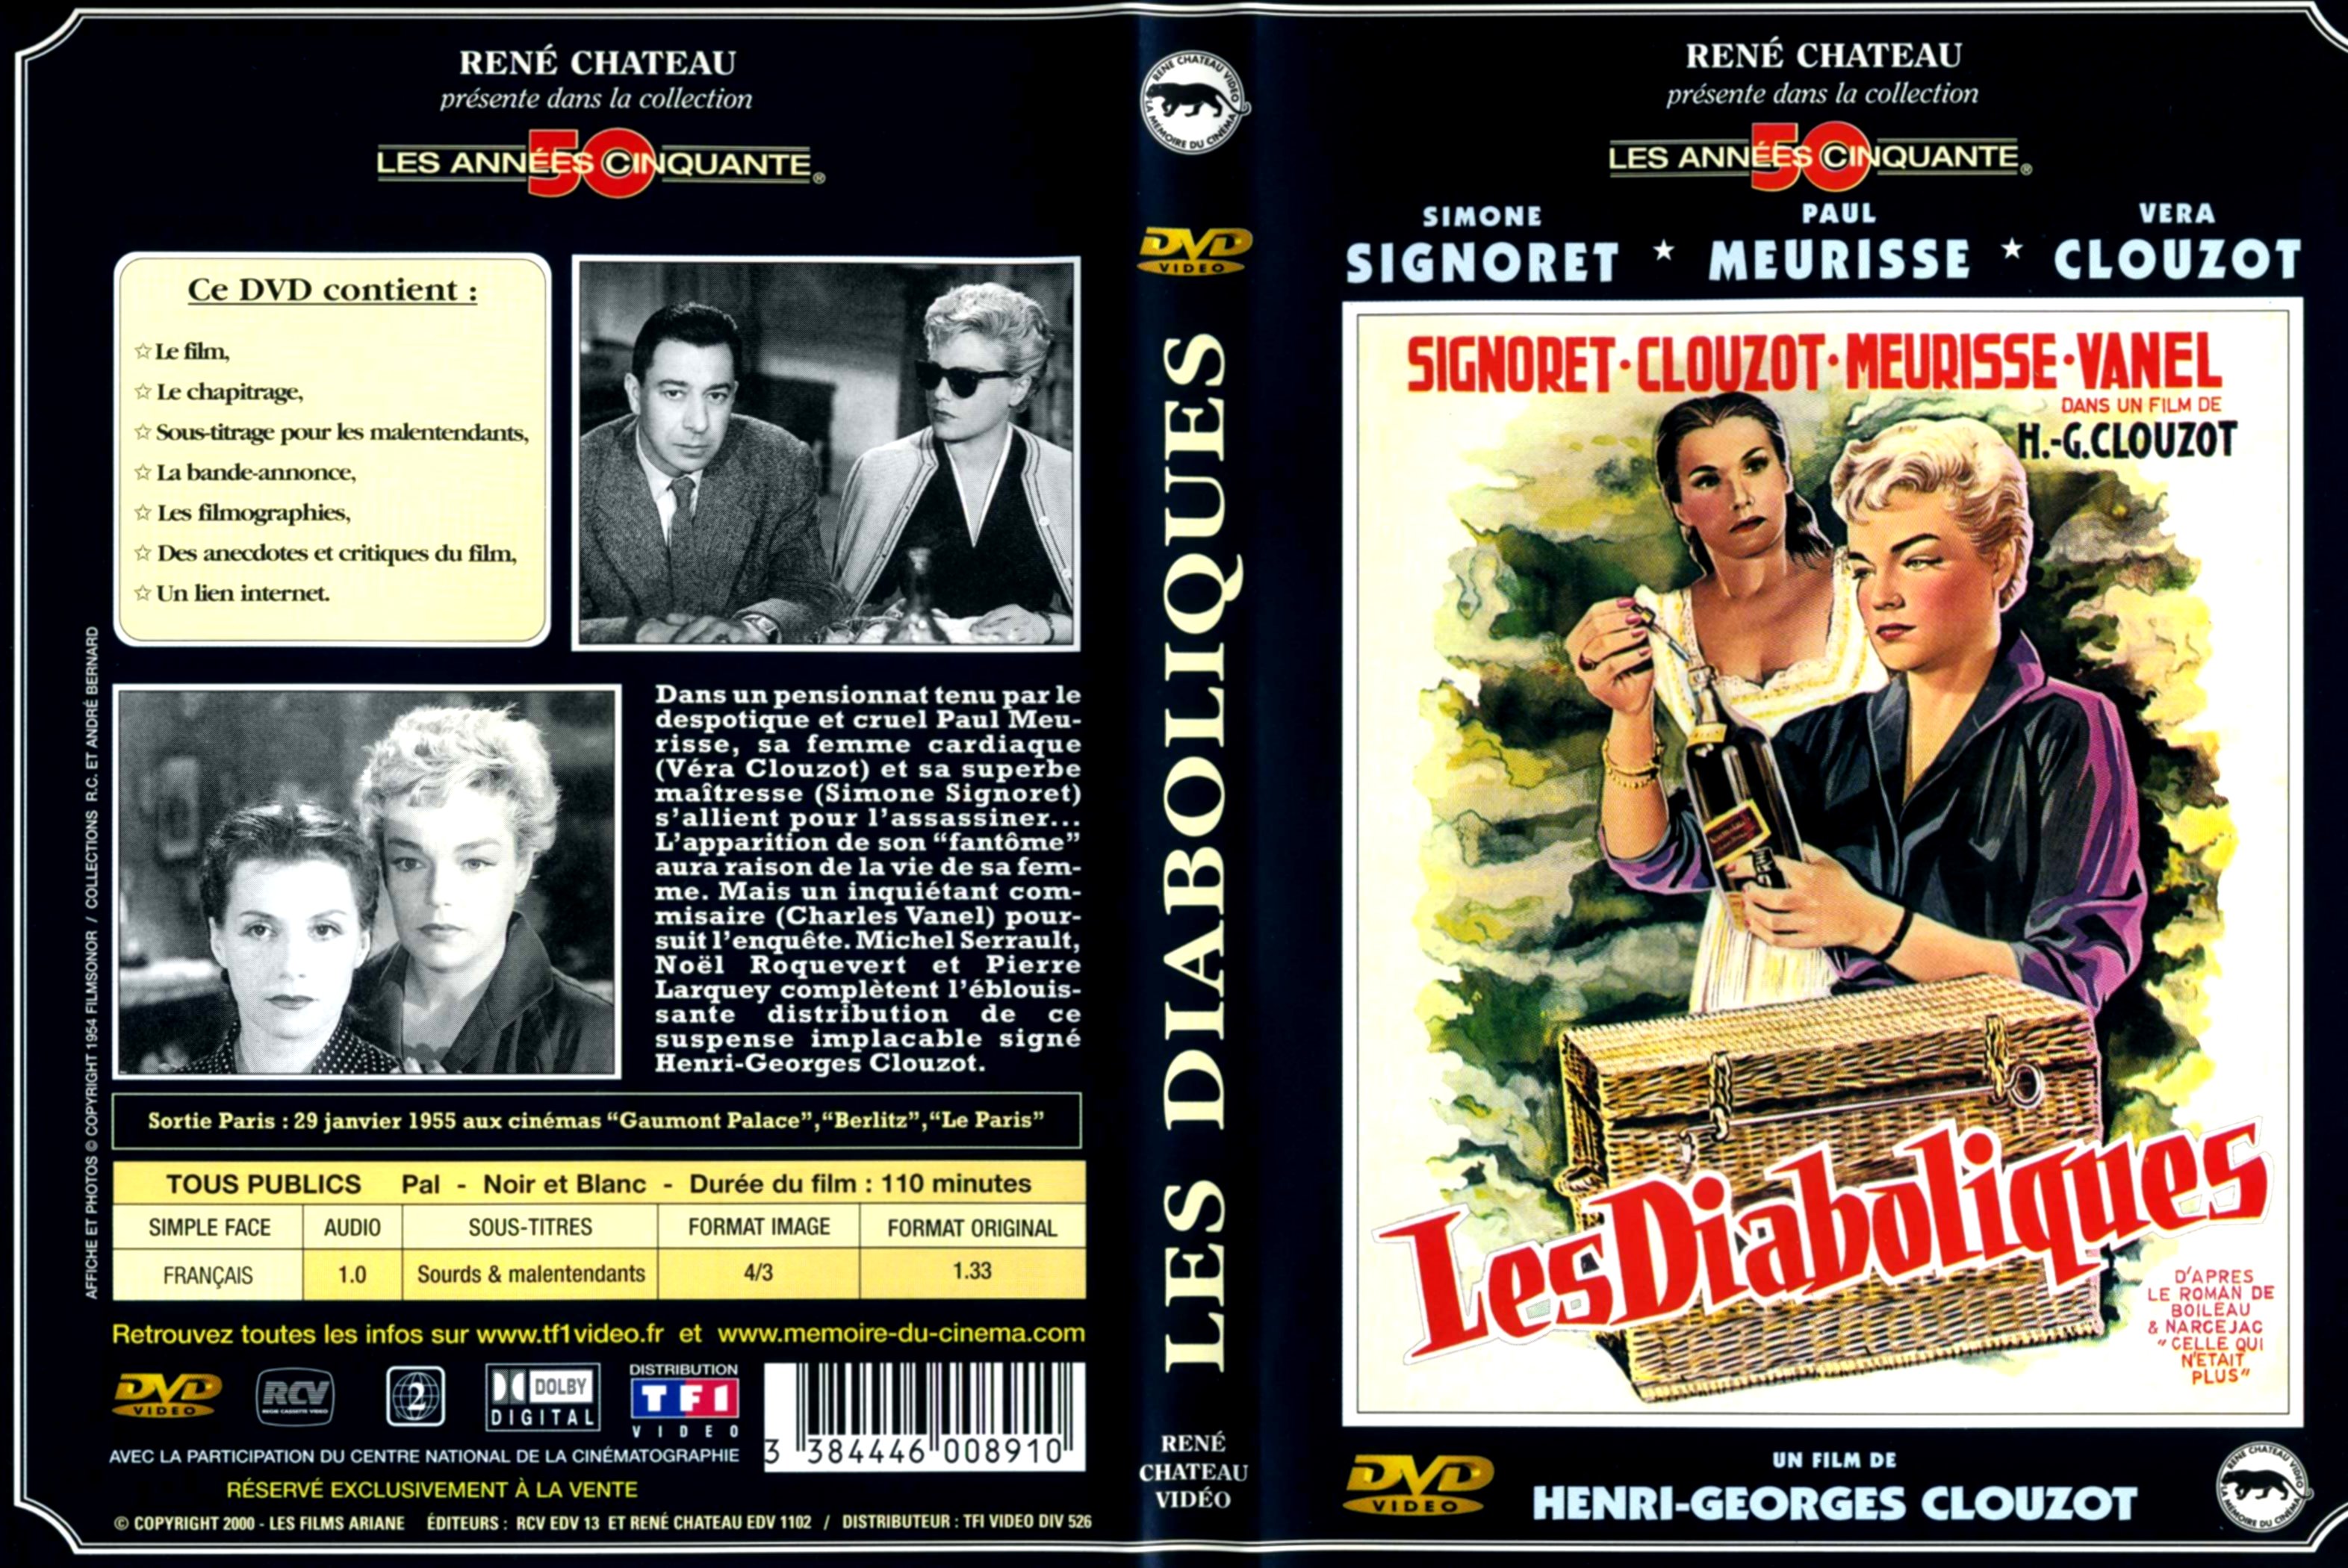 Jaquette DVD Les diaboliques